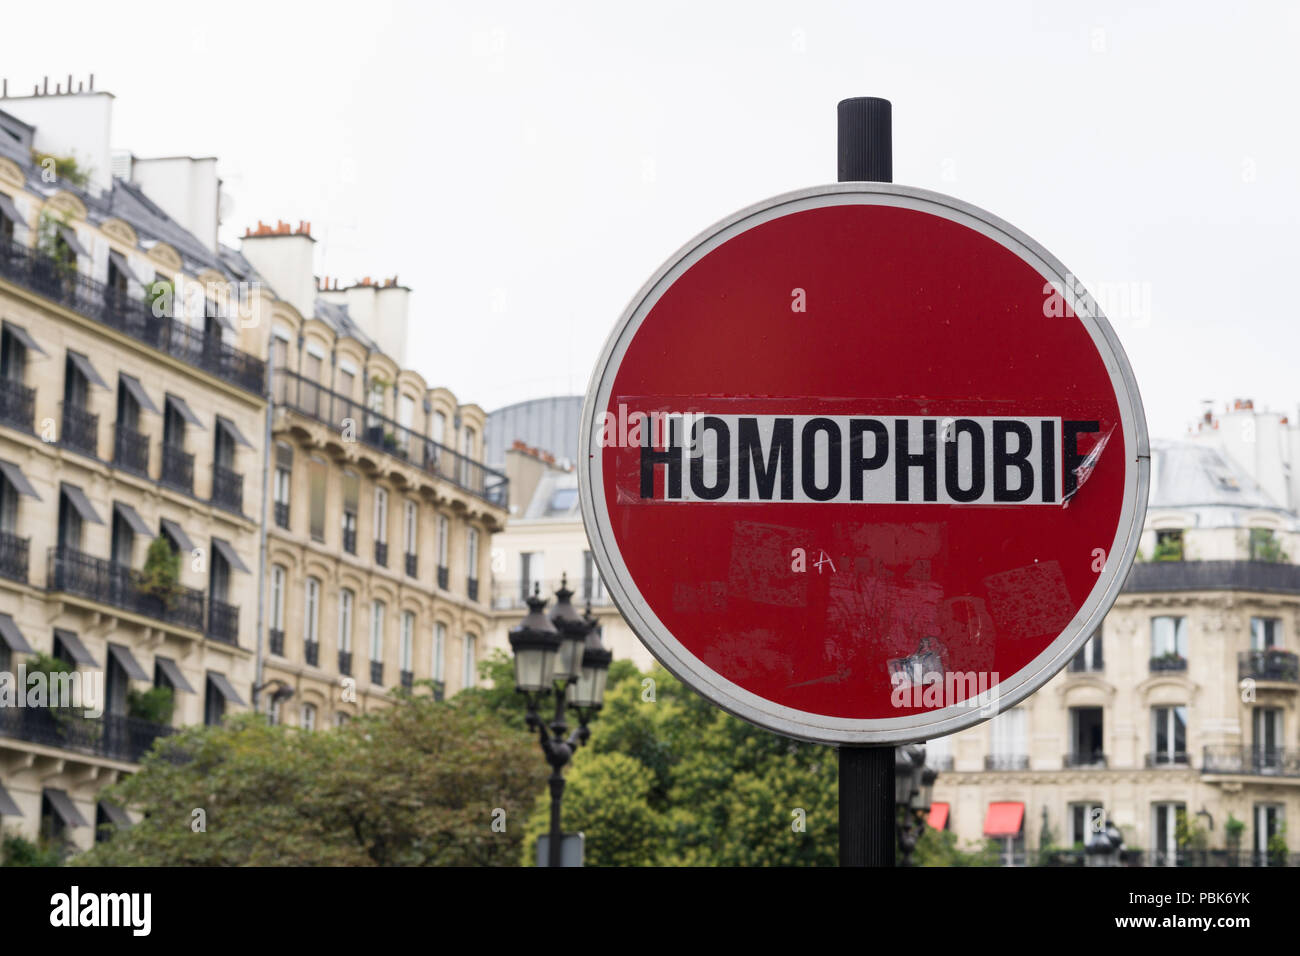 Activismo LGBT - Anti homofobia arte callejero en París, Francia, Europa. Foto de stock